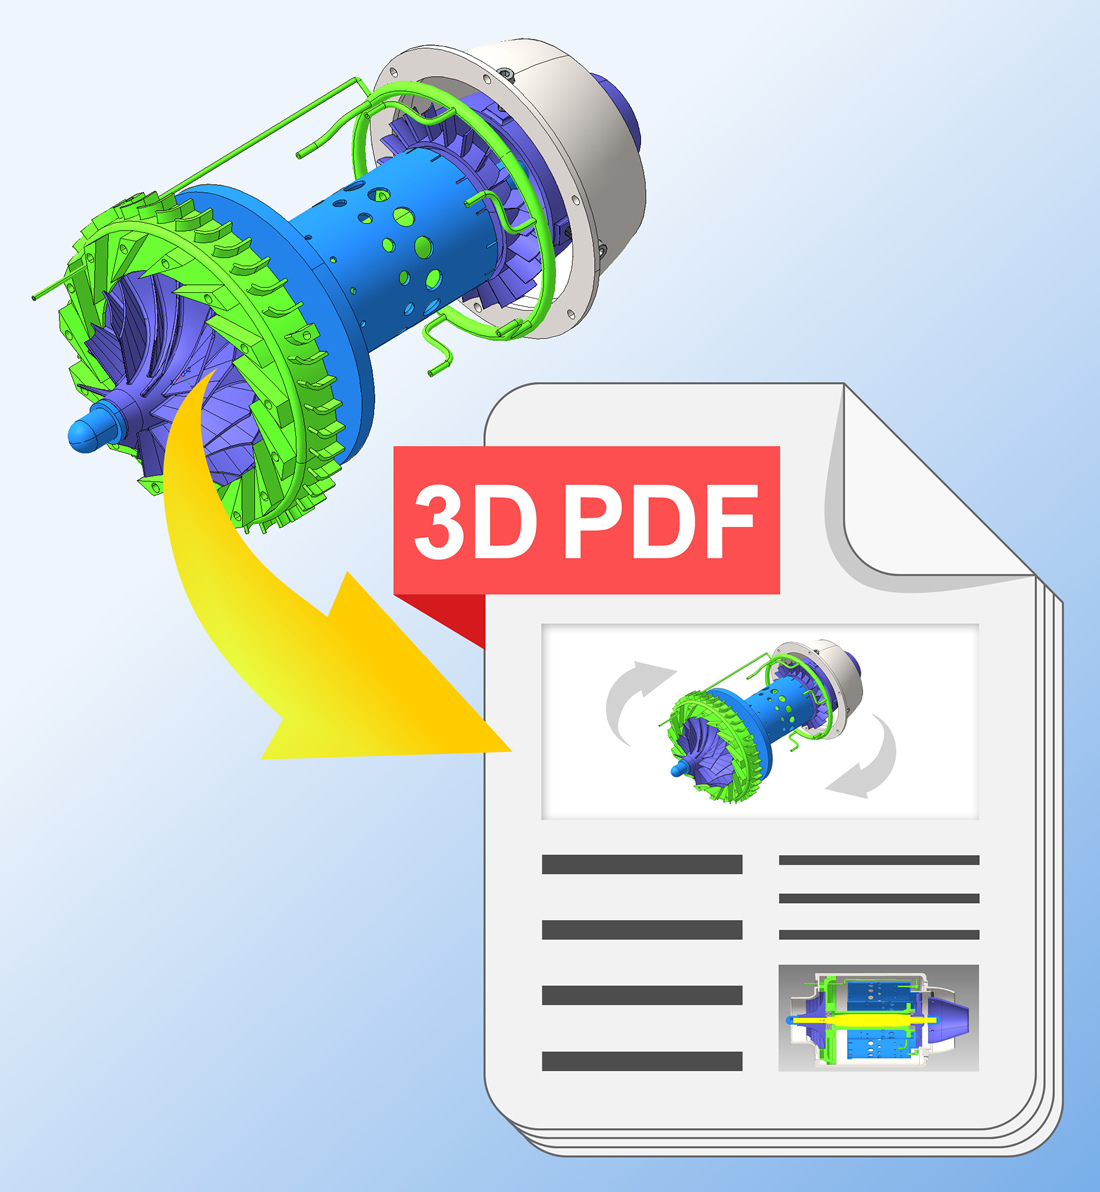 Mittels 3D PDF alle CAD-Informationen in einem Dokument, drehbare Modelle, PMI, Materialinformationen, Maße, Revisionshistorie, für jedes Endgerät